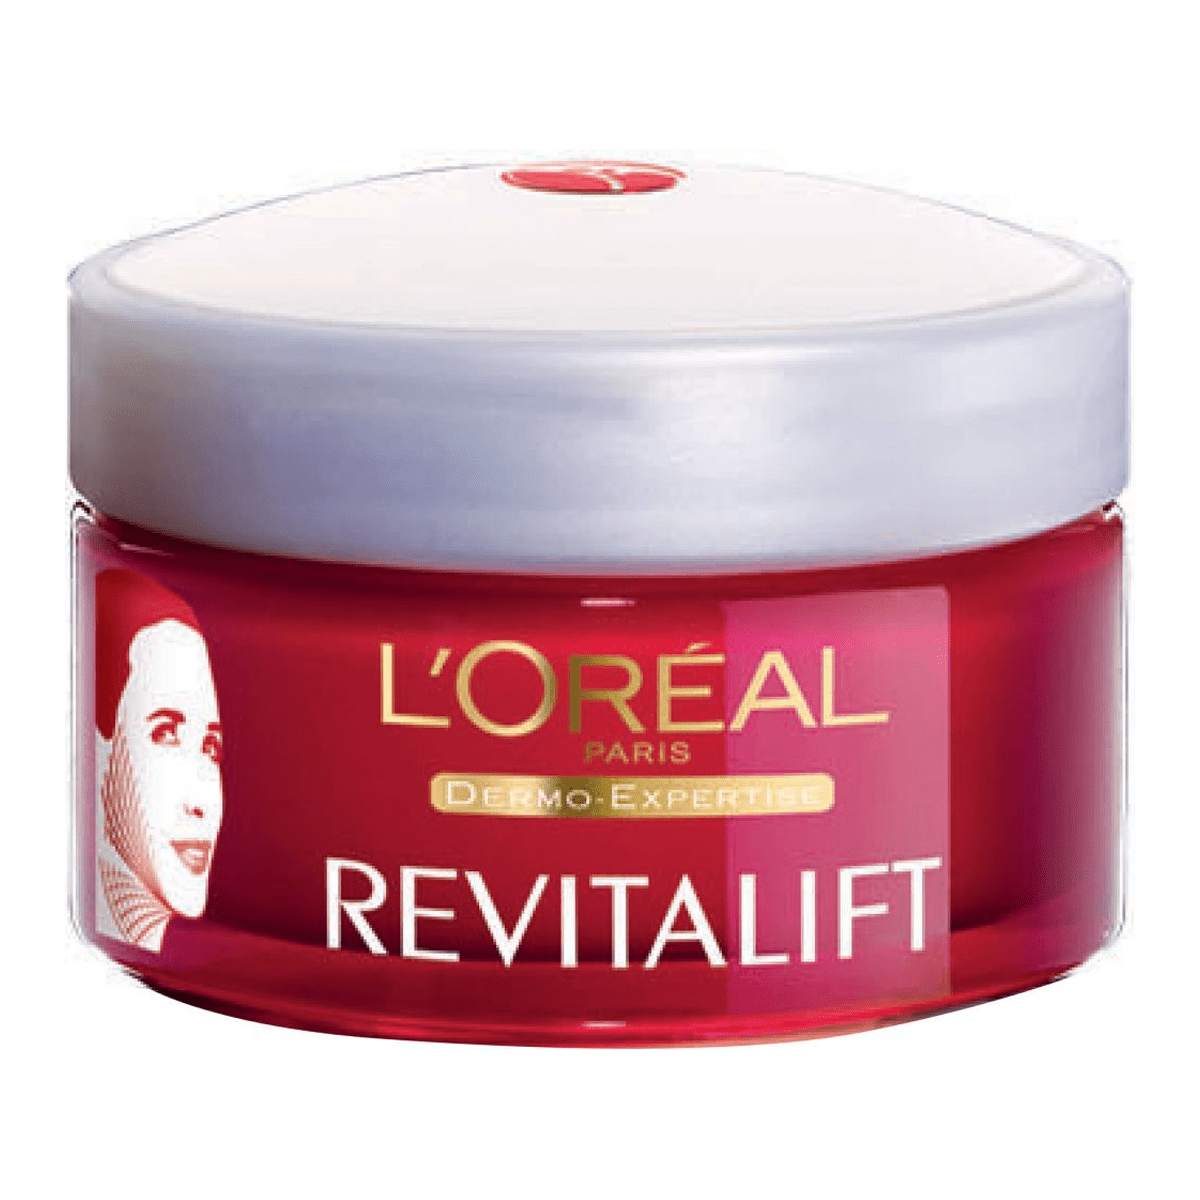 L'Oreal Paris Revitalift Face & Neck Moisturizing Cream